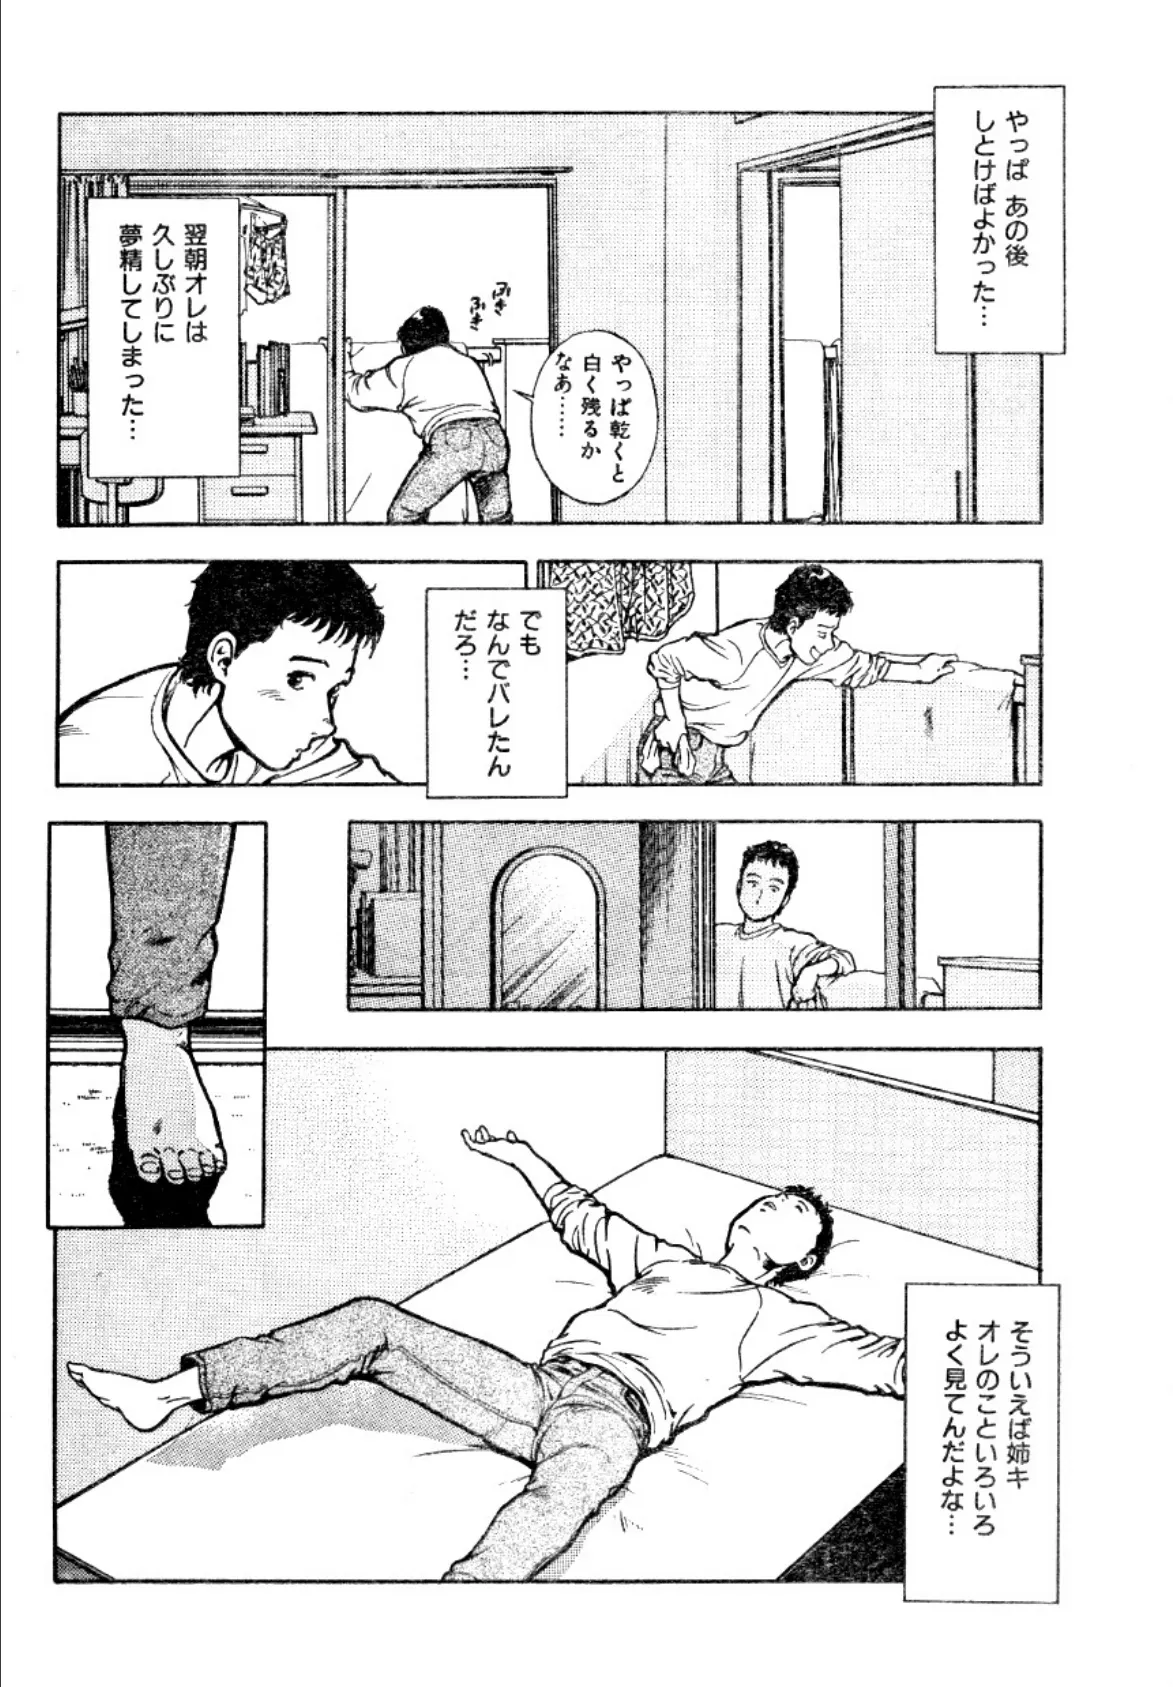 大葉康雄短編集 vol.1 女は淫らな夢を見る 12ページ